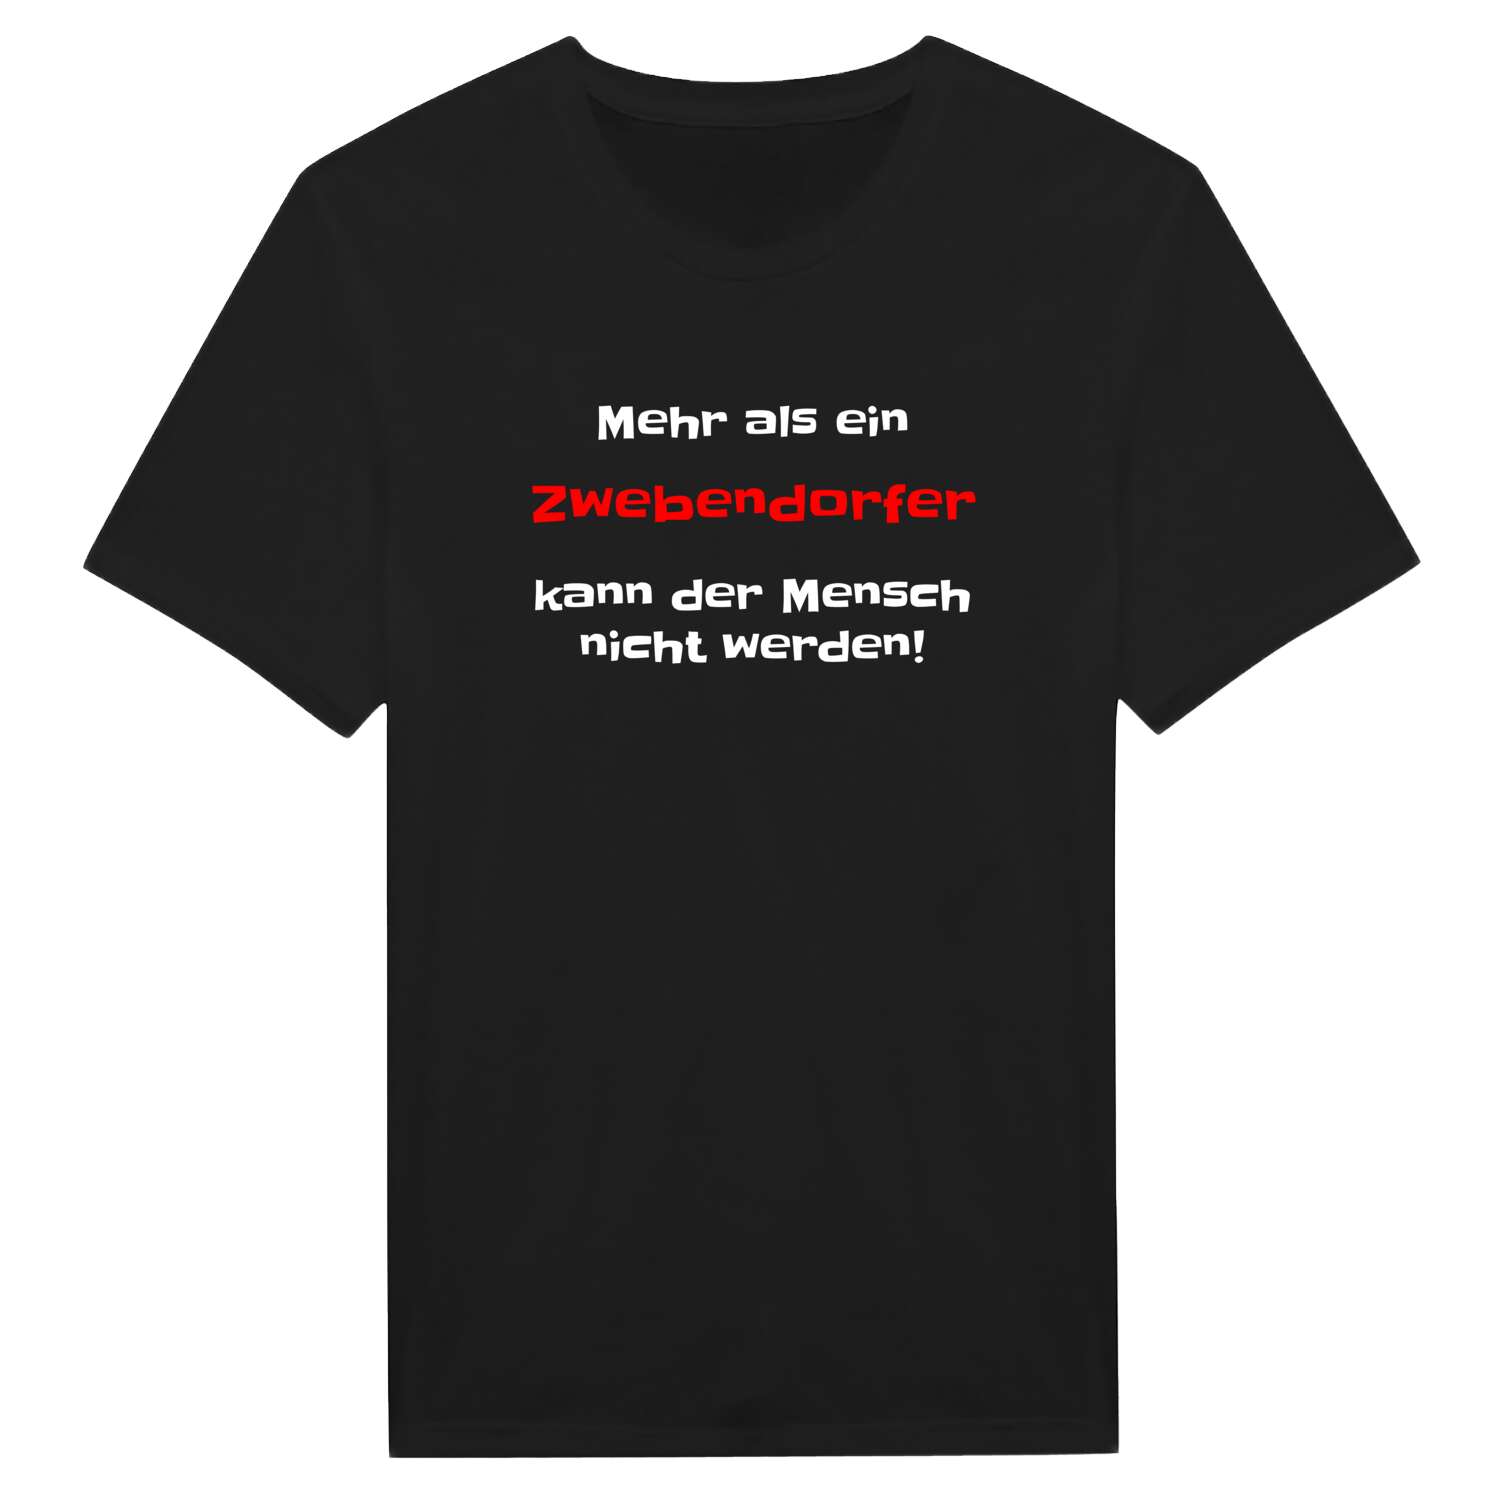 Zwebendorf T-Shirt »Mehr als ein«